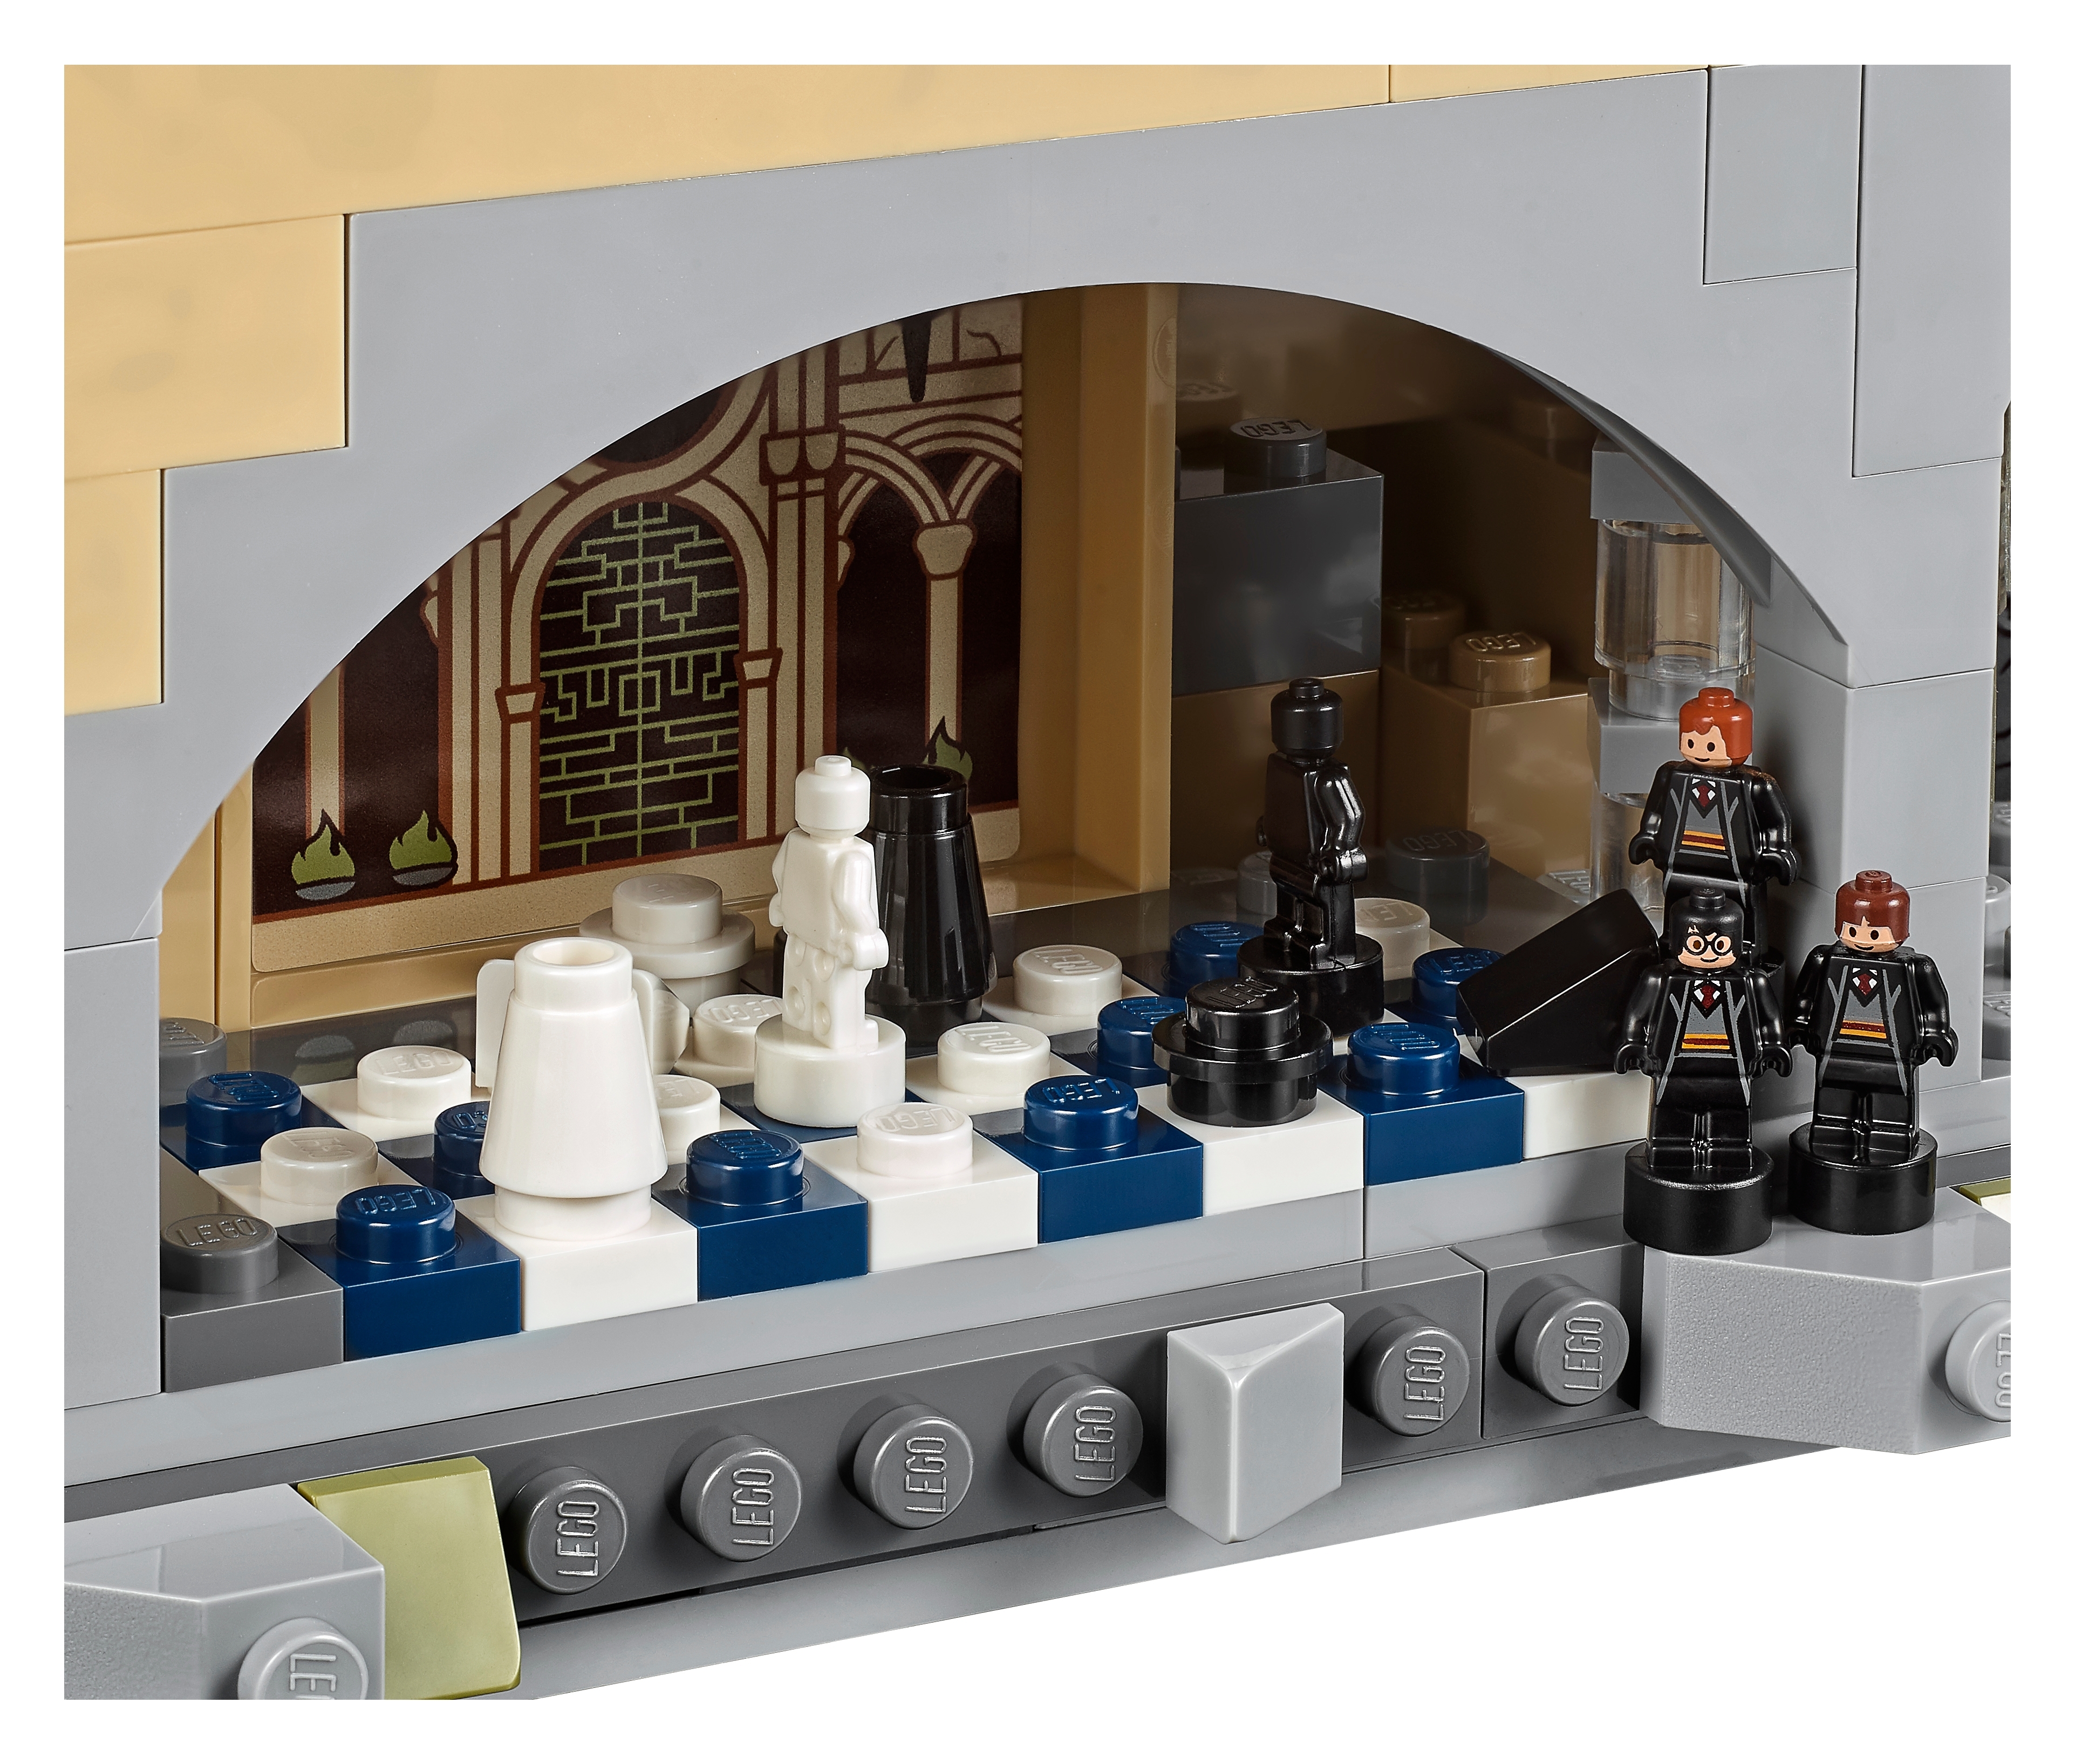  LEGO Harry Potter Hogwarts Castle 71043 Building Set